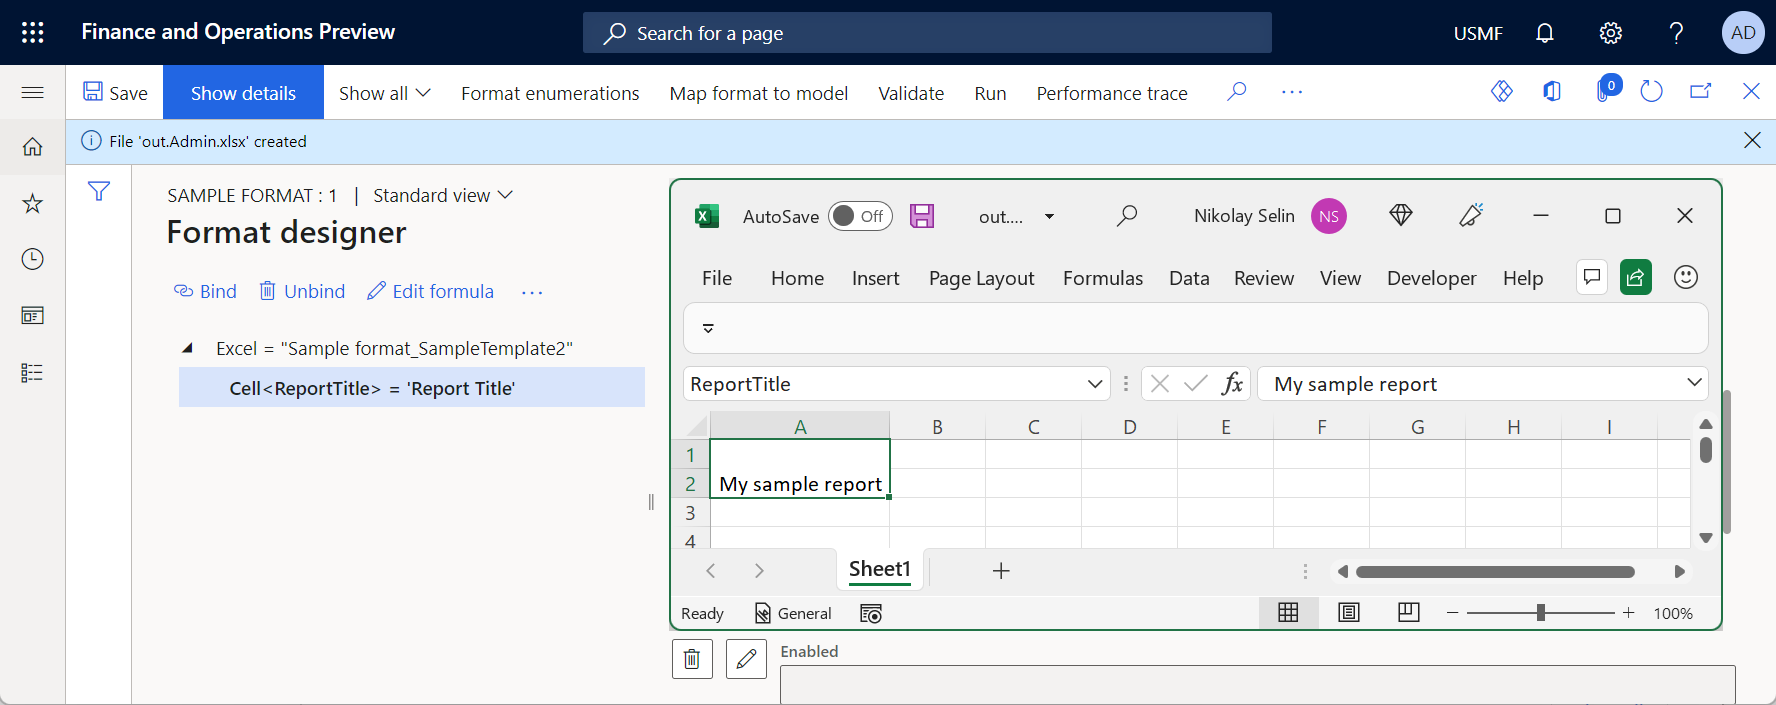 在 Excel 桌面应用程序中查看生成的文档。